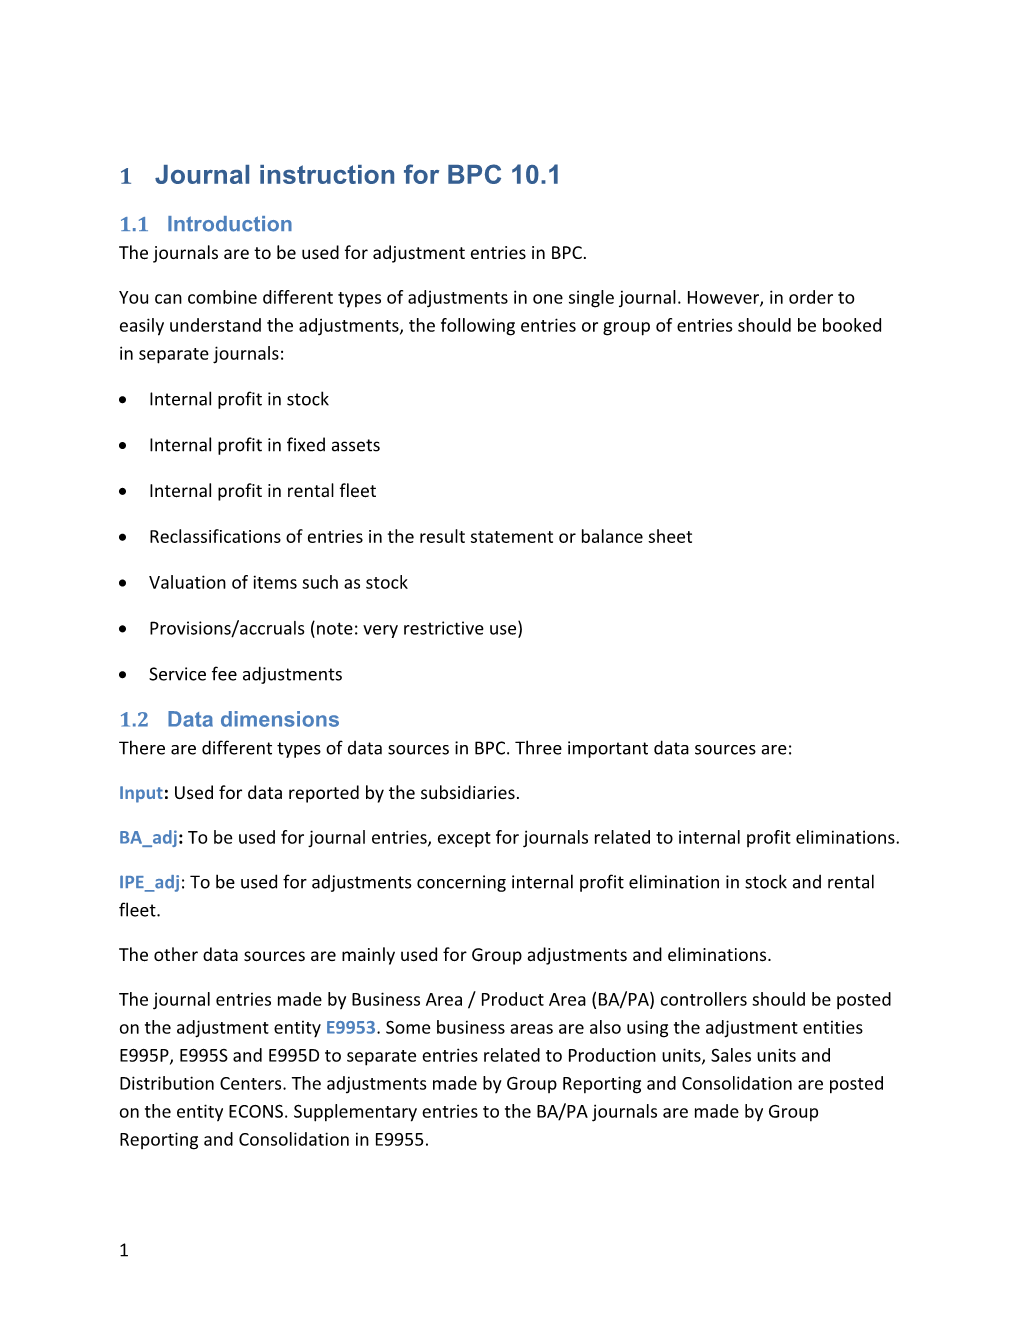 1 Journal Instruction for BPC 10.1